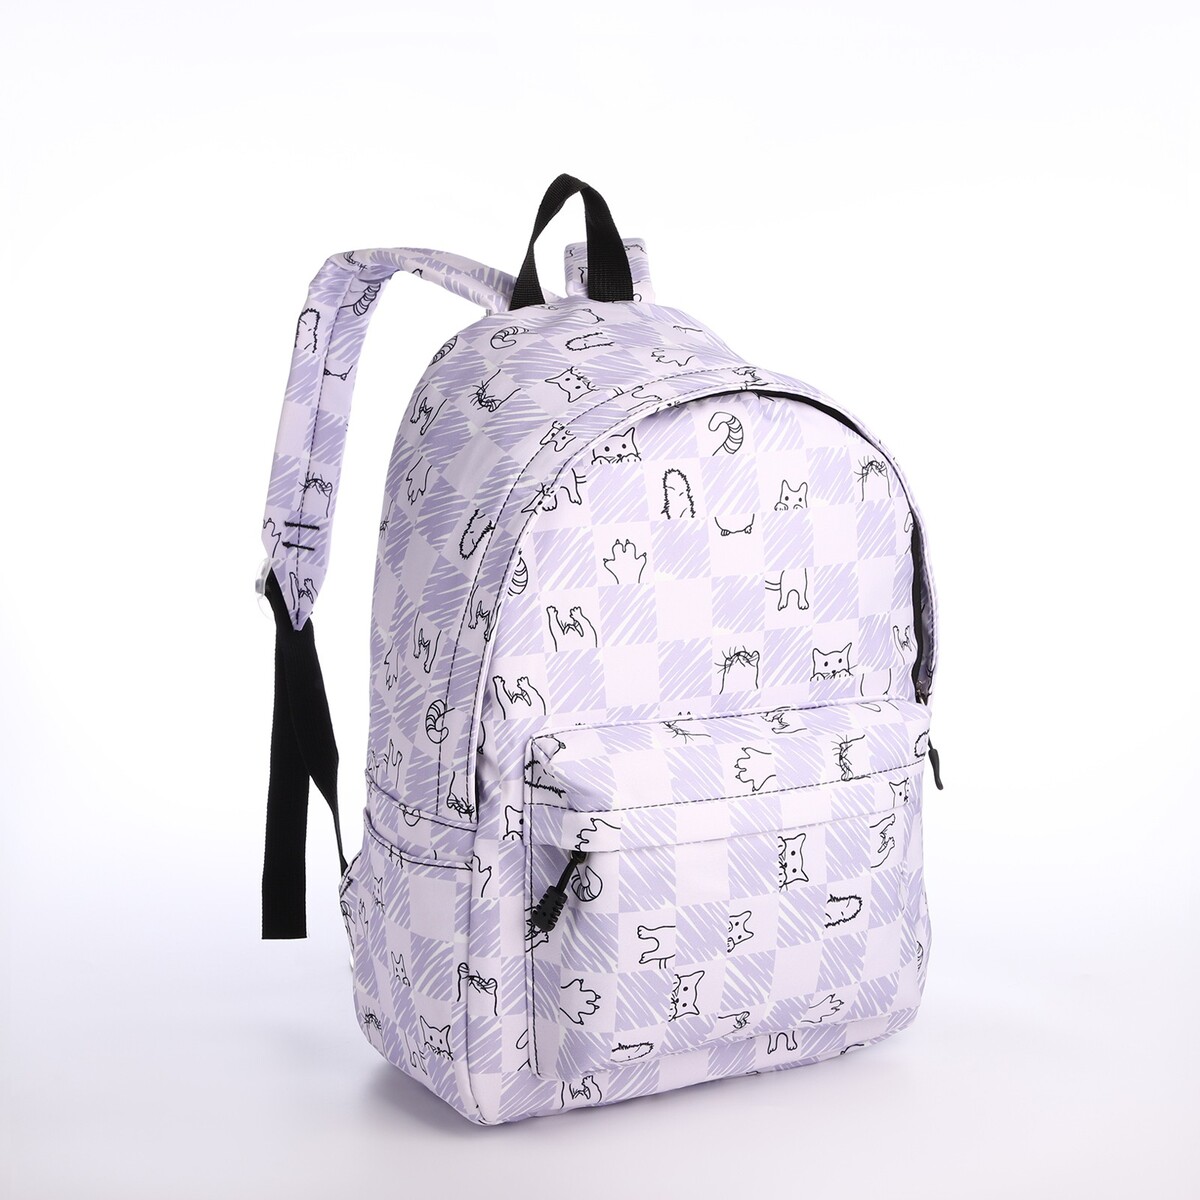 Рюкзак школьный из текстиля на молнии, 4 кармана, цвет сиреневый рюкзак школьный из текстиля на молнии 4 кармана сиреневый